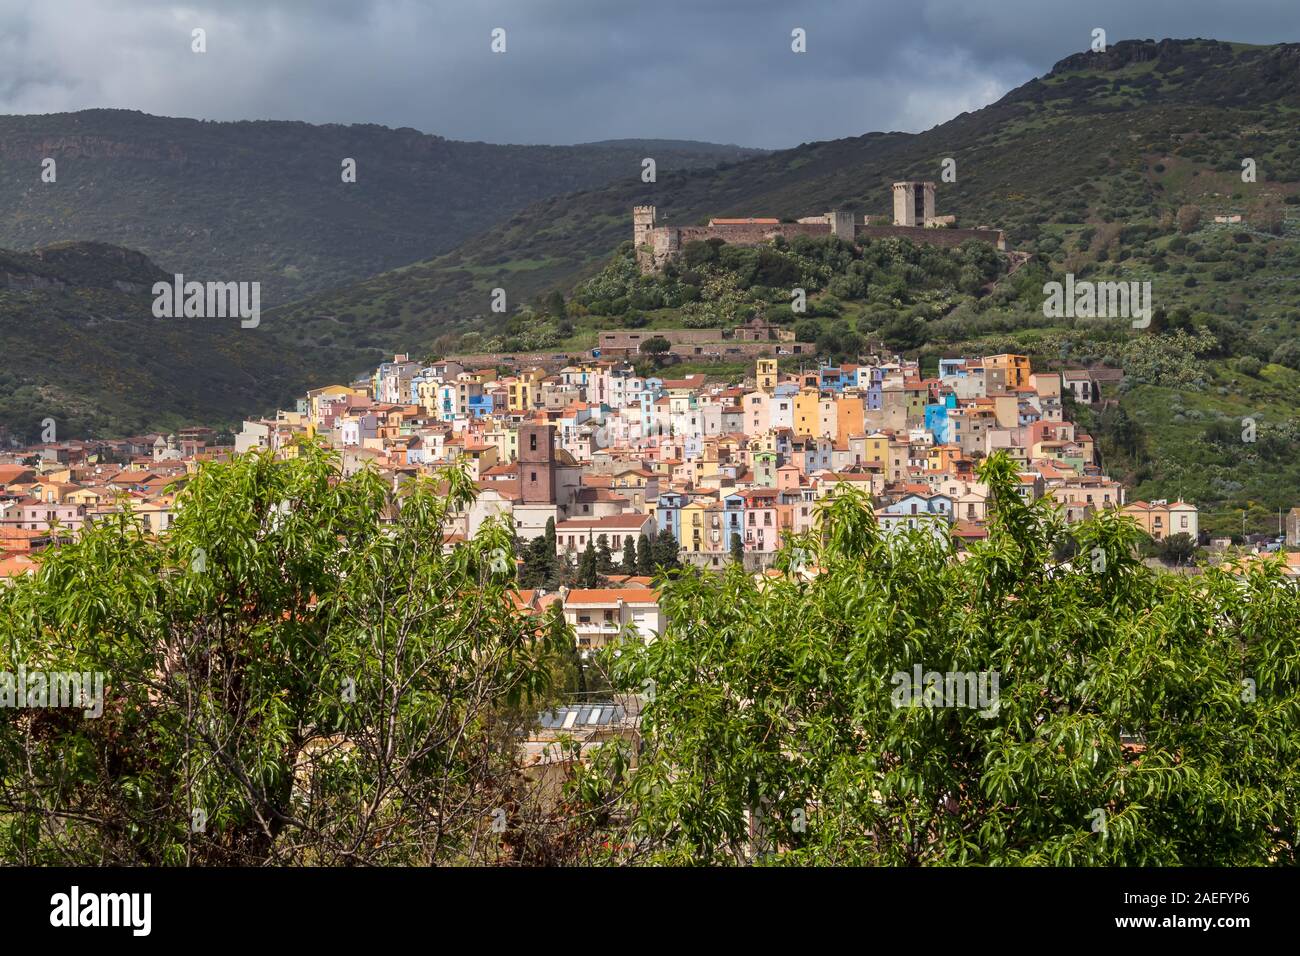 Luftaufnahme auf die bunten kleinen Stadt, in einem Tal an der Küste des Mittelmeers entfernt. Frische grüne Pflanzen, bewölkt regnerisch frühling himmel. Bosa, Stockfoto